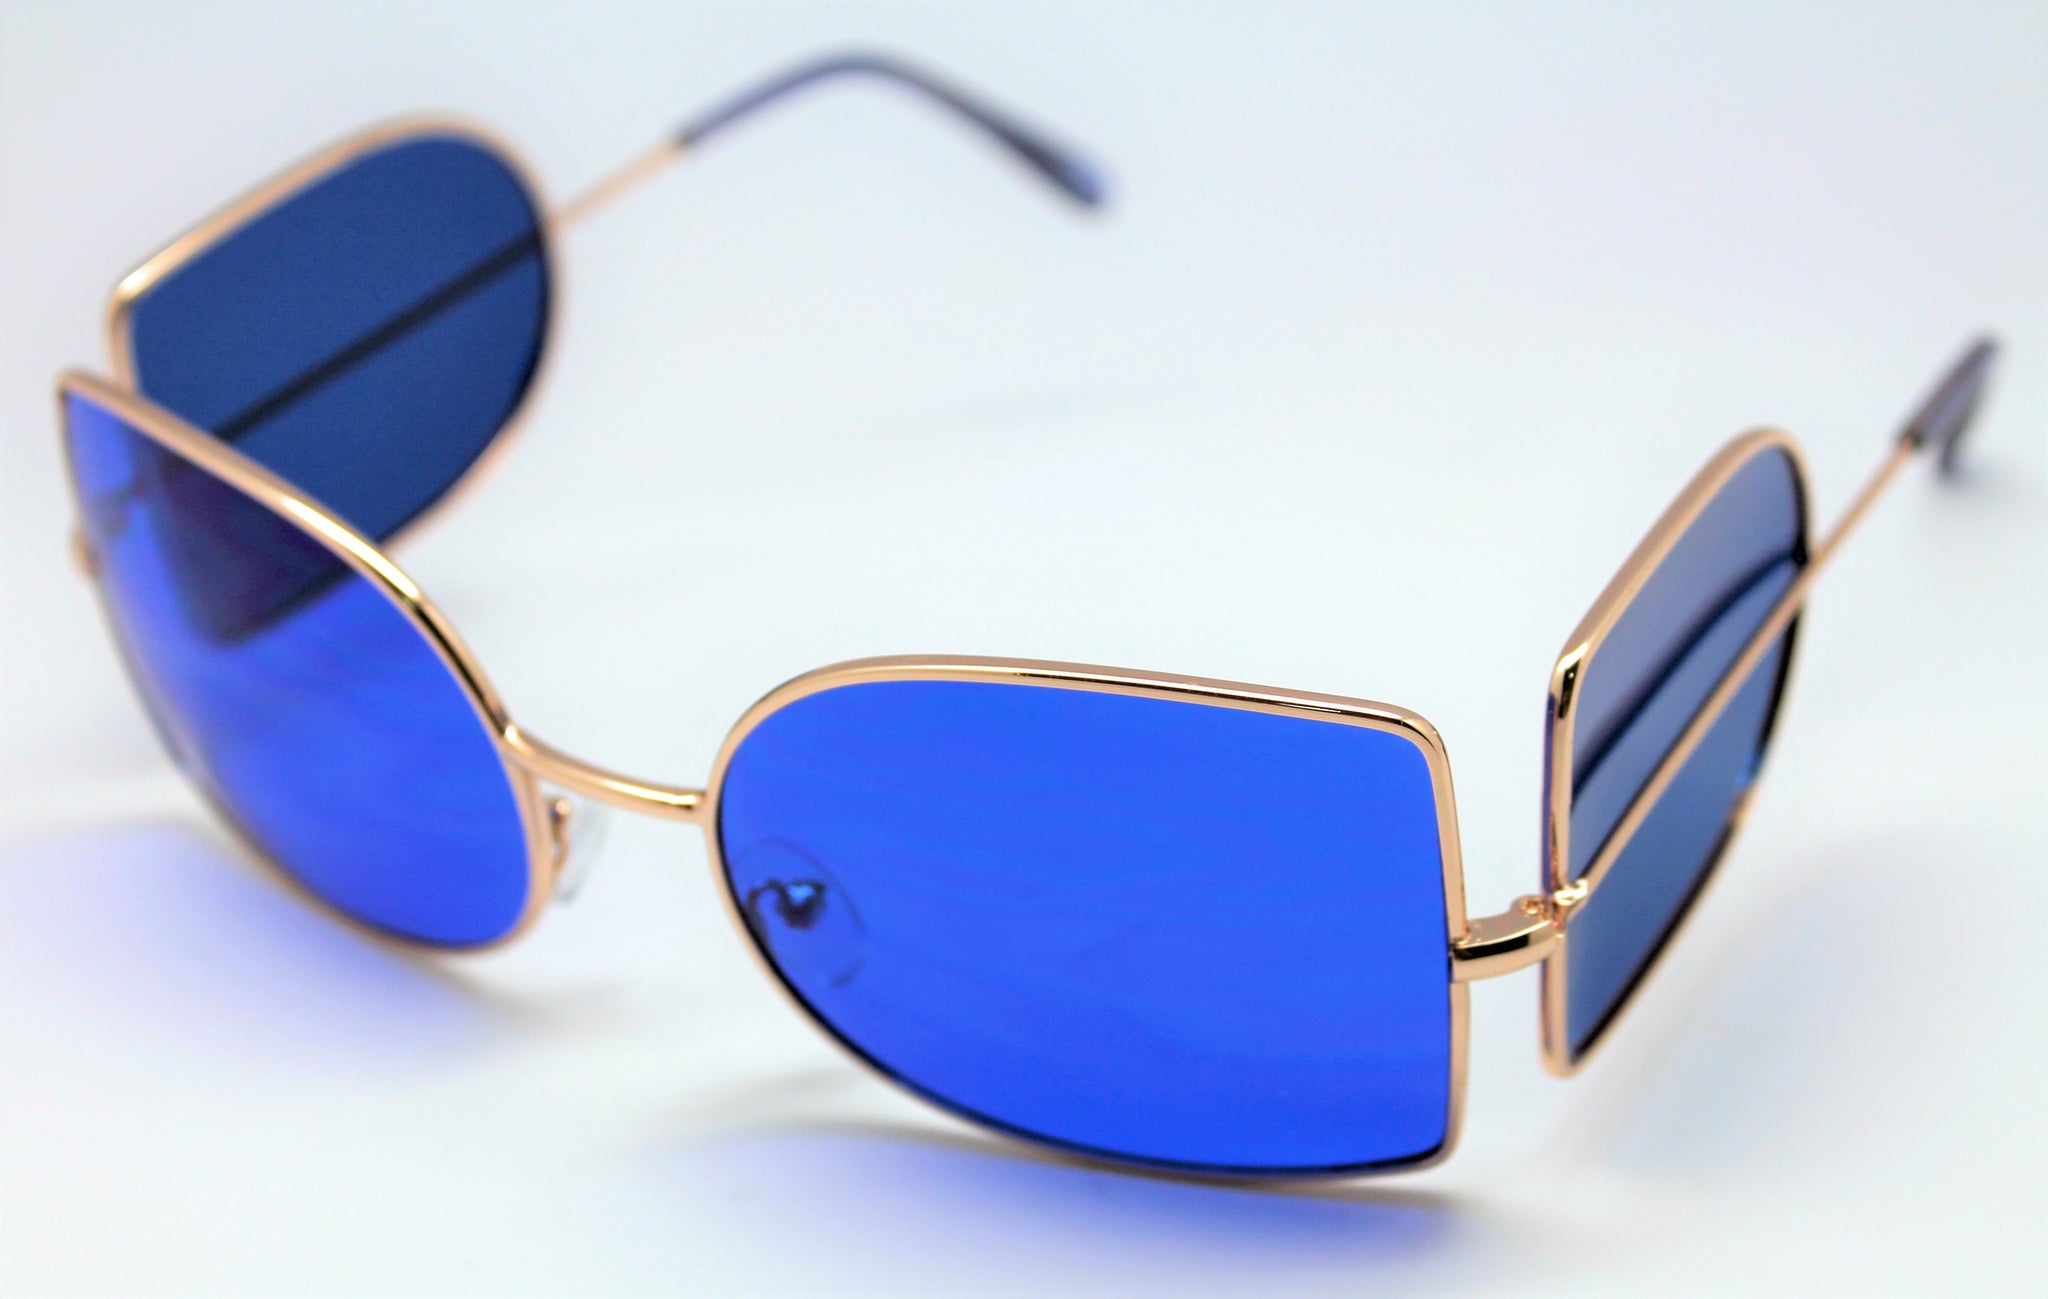 Купить синие очки. Синие очки. Солнцезащитные очки синие линзы. Очки с синими стеклами. Очки с синими линзами.